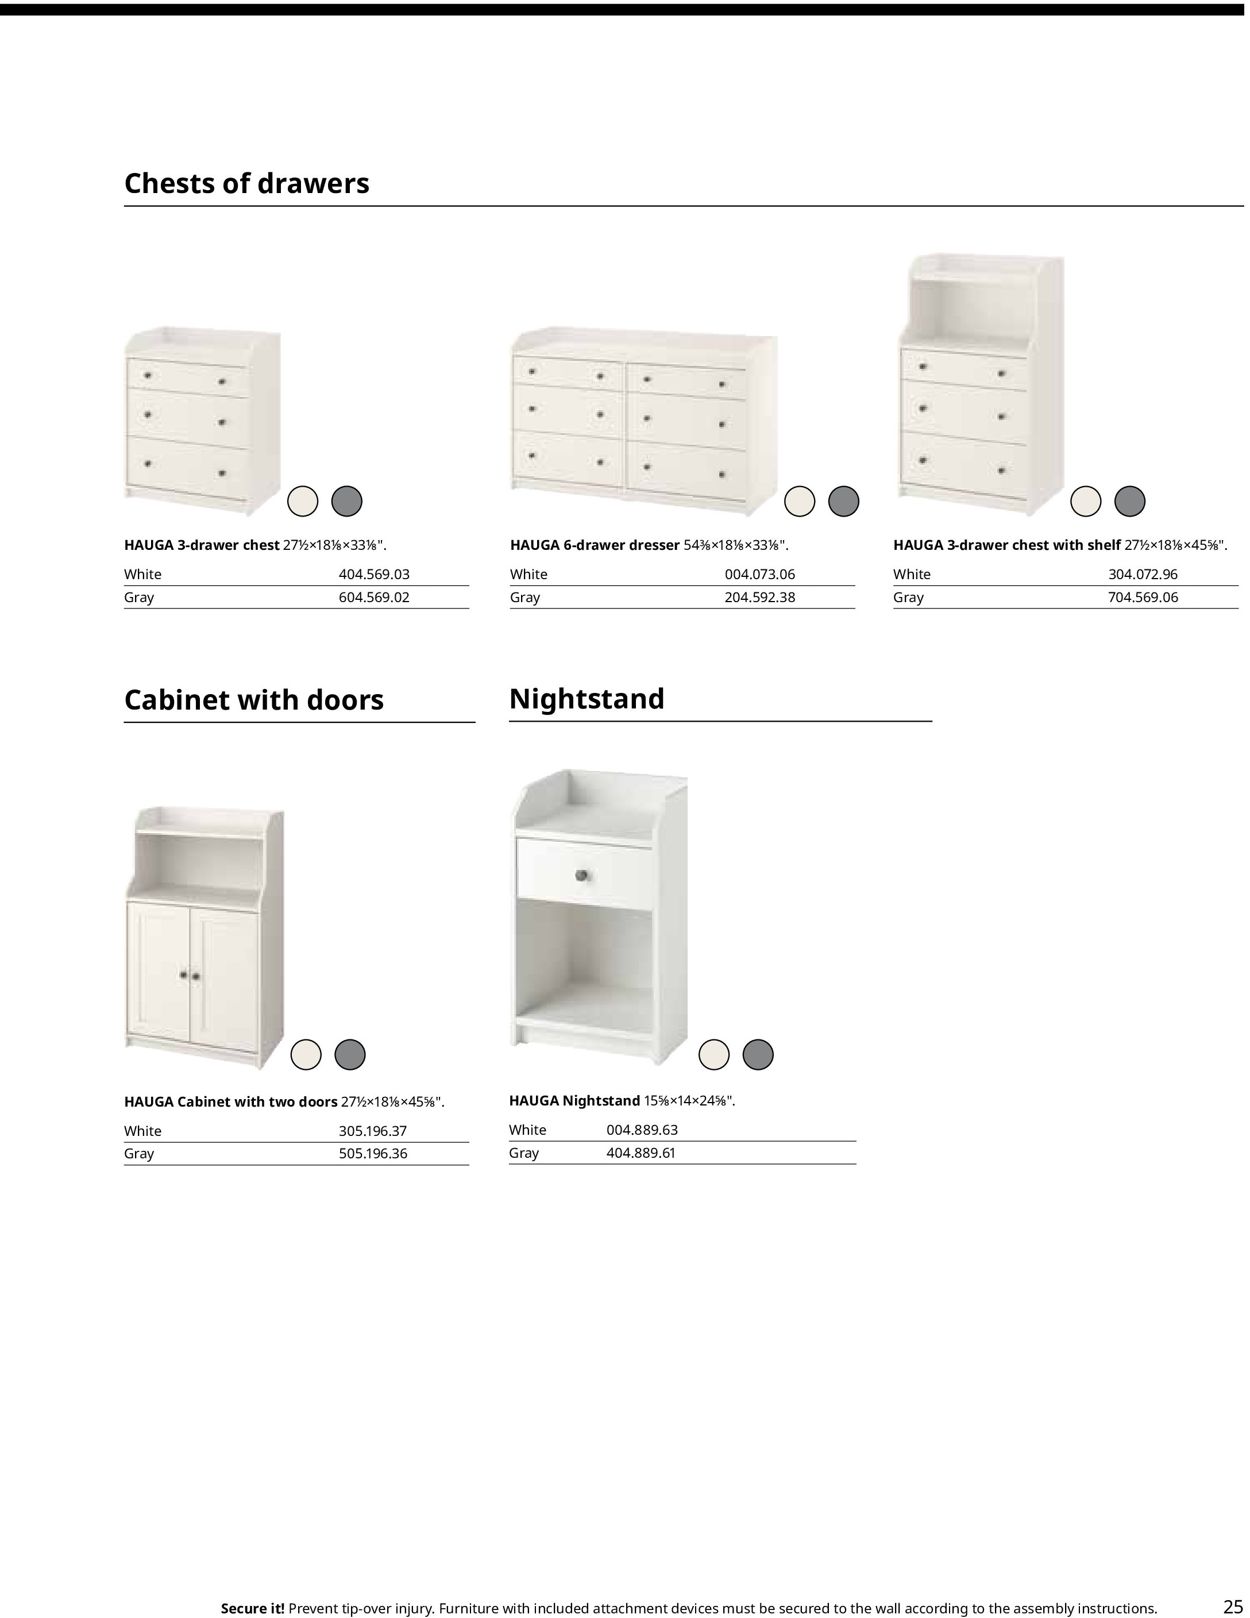 Catalogue IKEA from 01/01/2022